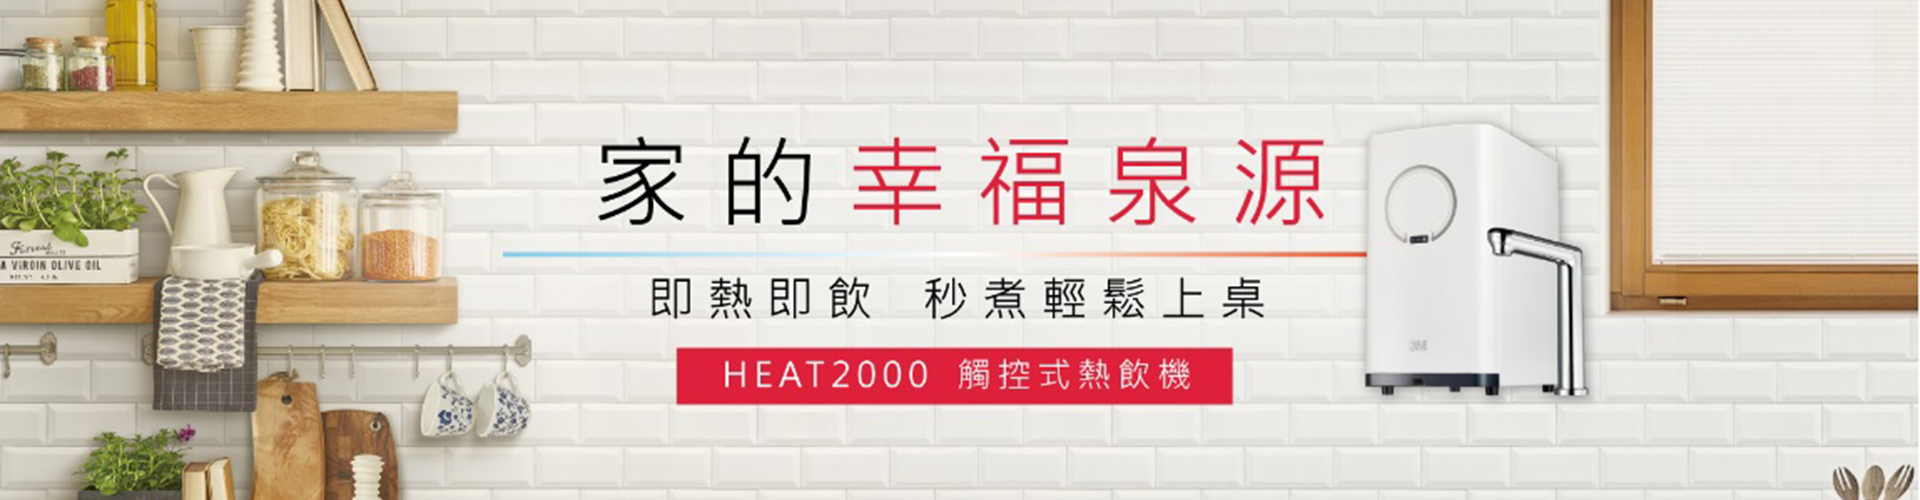 3M HEAT2000 觸控式熱飲機